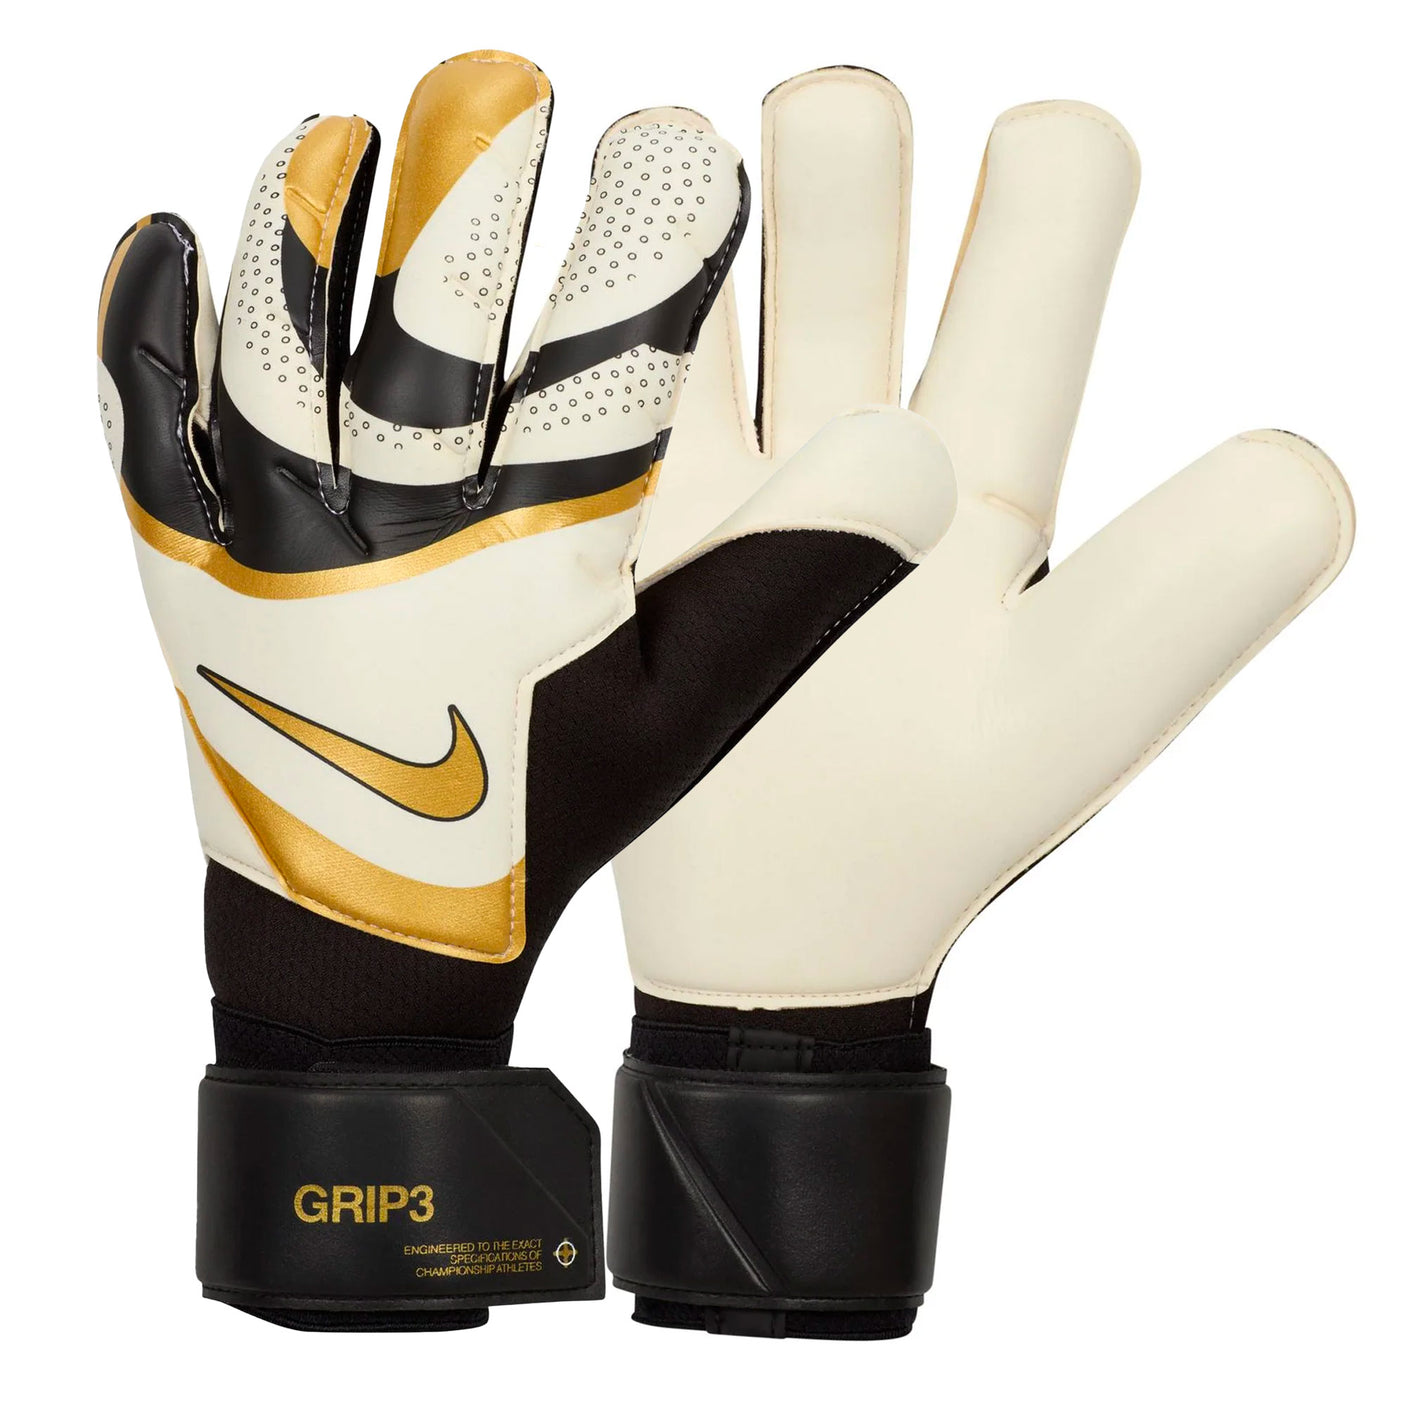 Nike Men's Grip 3 GoalKeeper Gloves Black/Gold/White Both